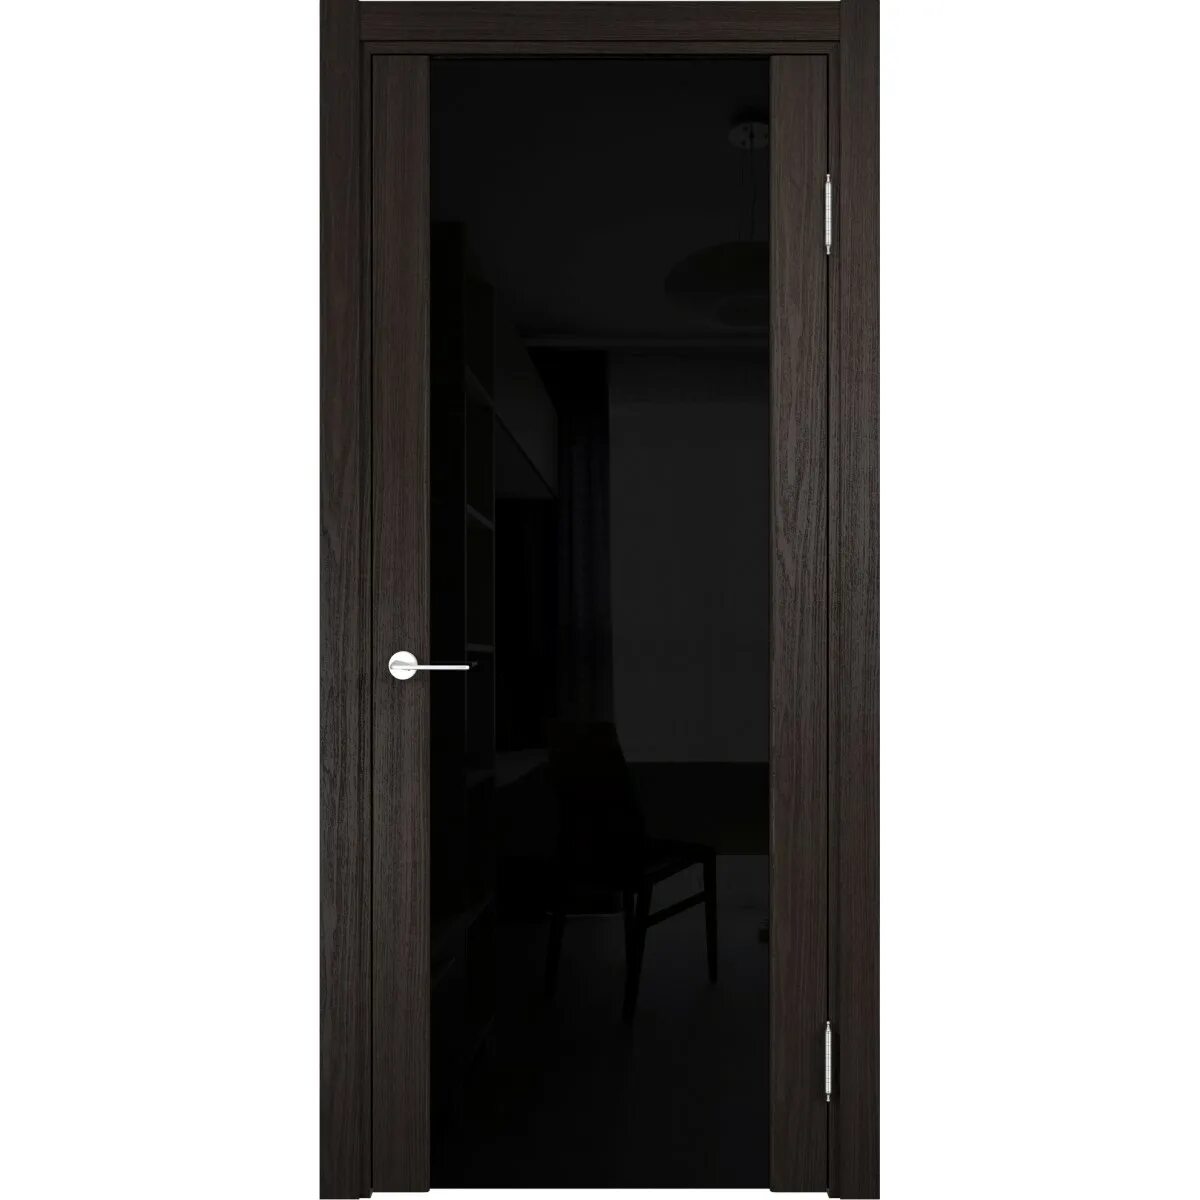 Черные двери со стеклом. Двери межкомнатные Сан Ремо дуб шоколад. Дверь межкомнатная Сан-Ремо остекленная. Дверь Фрамир триплекс 70 венге. Дверь Сан Ремо со стеклом венге.